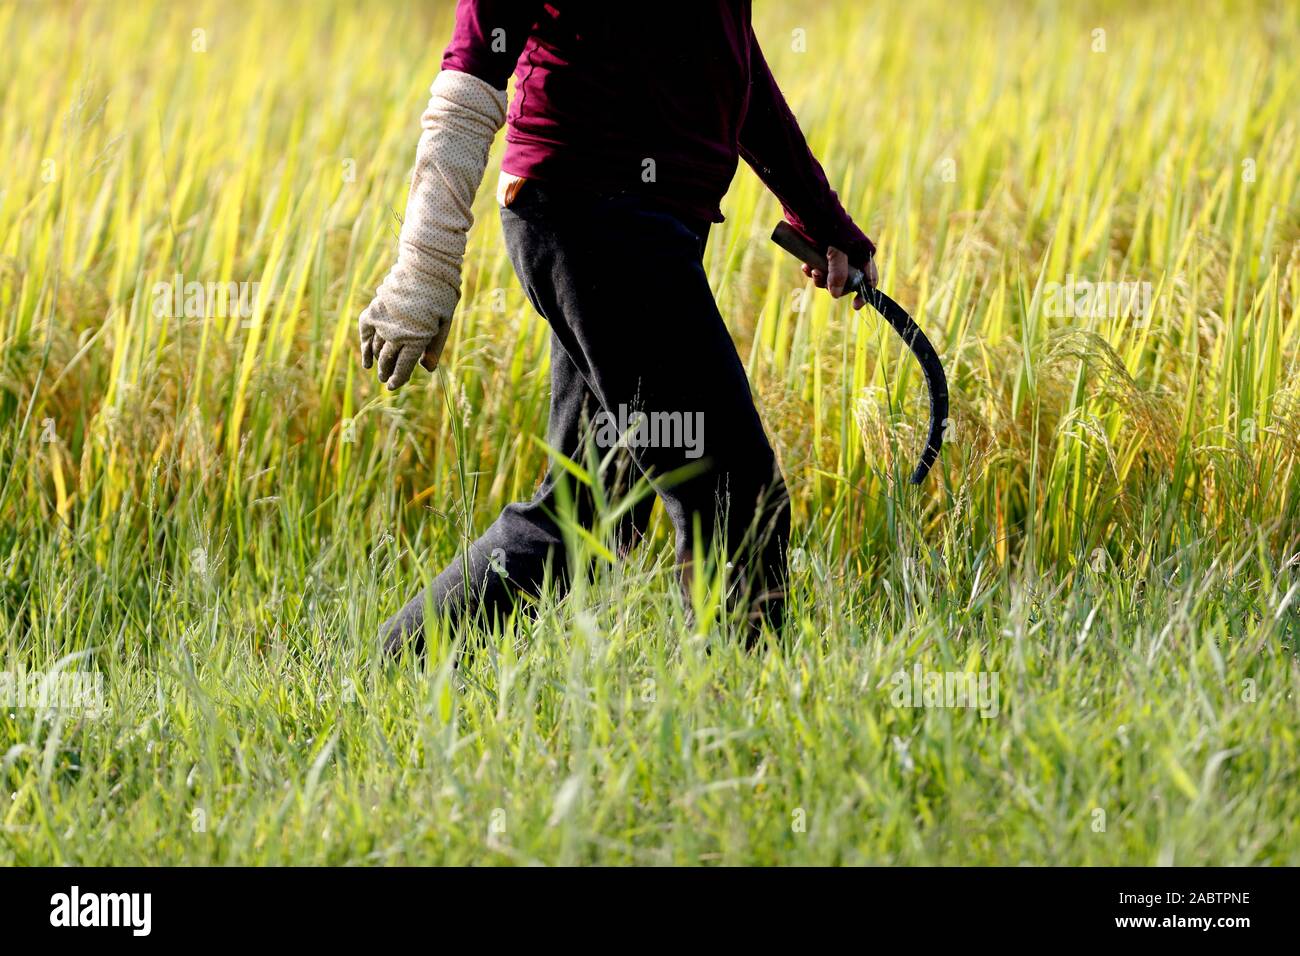 L'agriculture. Vietnamienne travaillant dans un champ de riz. Hoi An. Le Vietnam. Banque D'Images